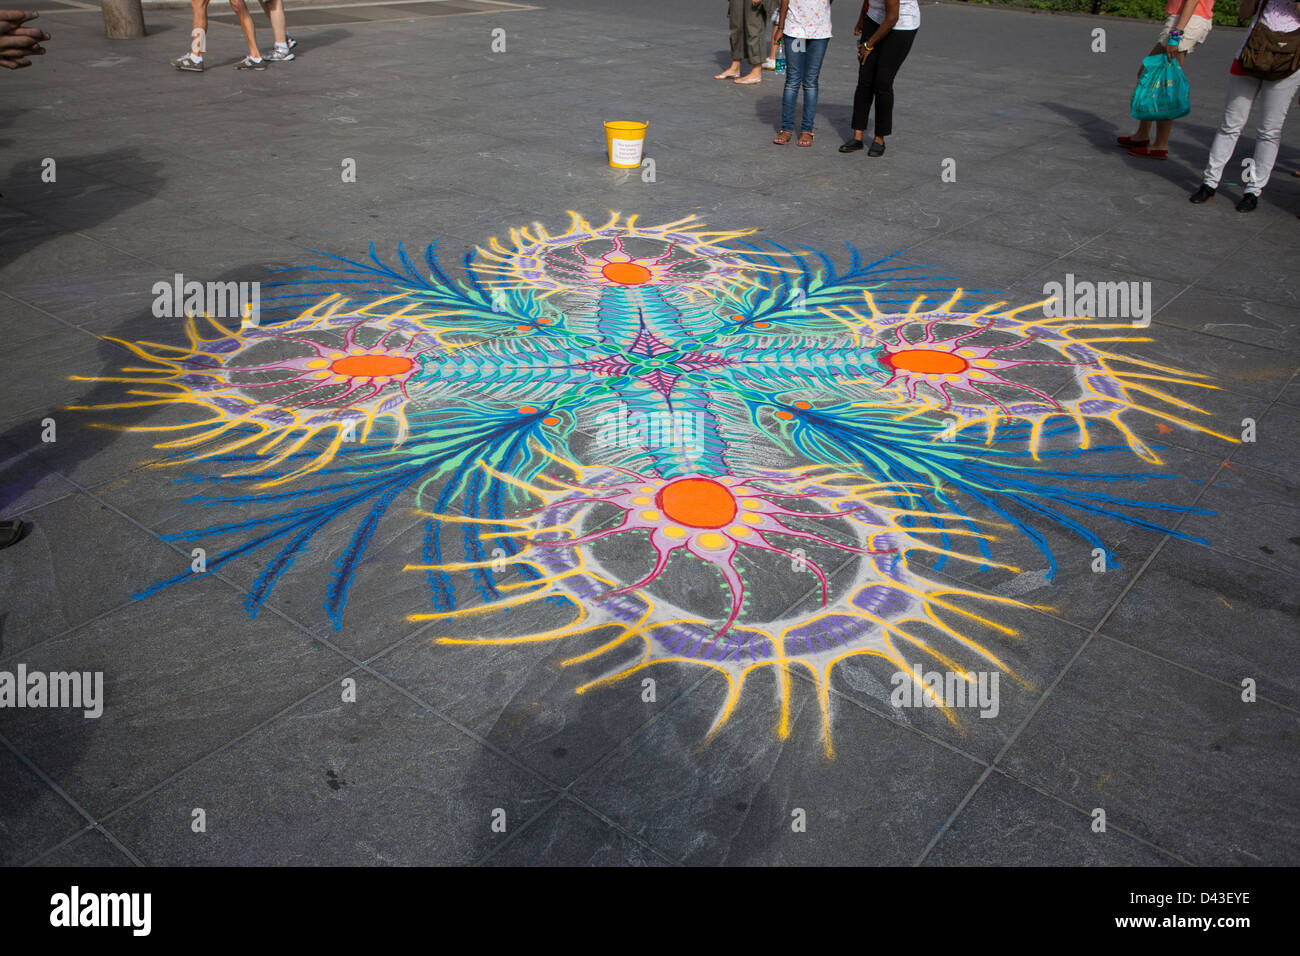 Verser de l'artiste du sable coloré sur le trottoir à Washington Square Park, New York, NY, USA Banque D'Images